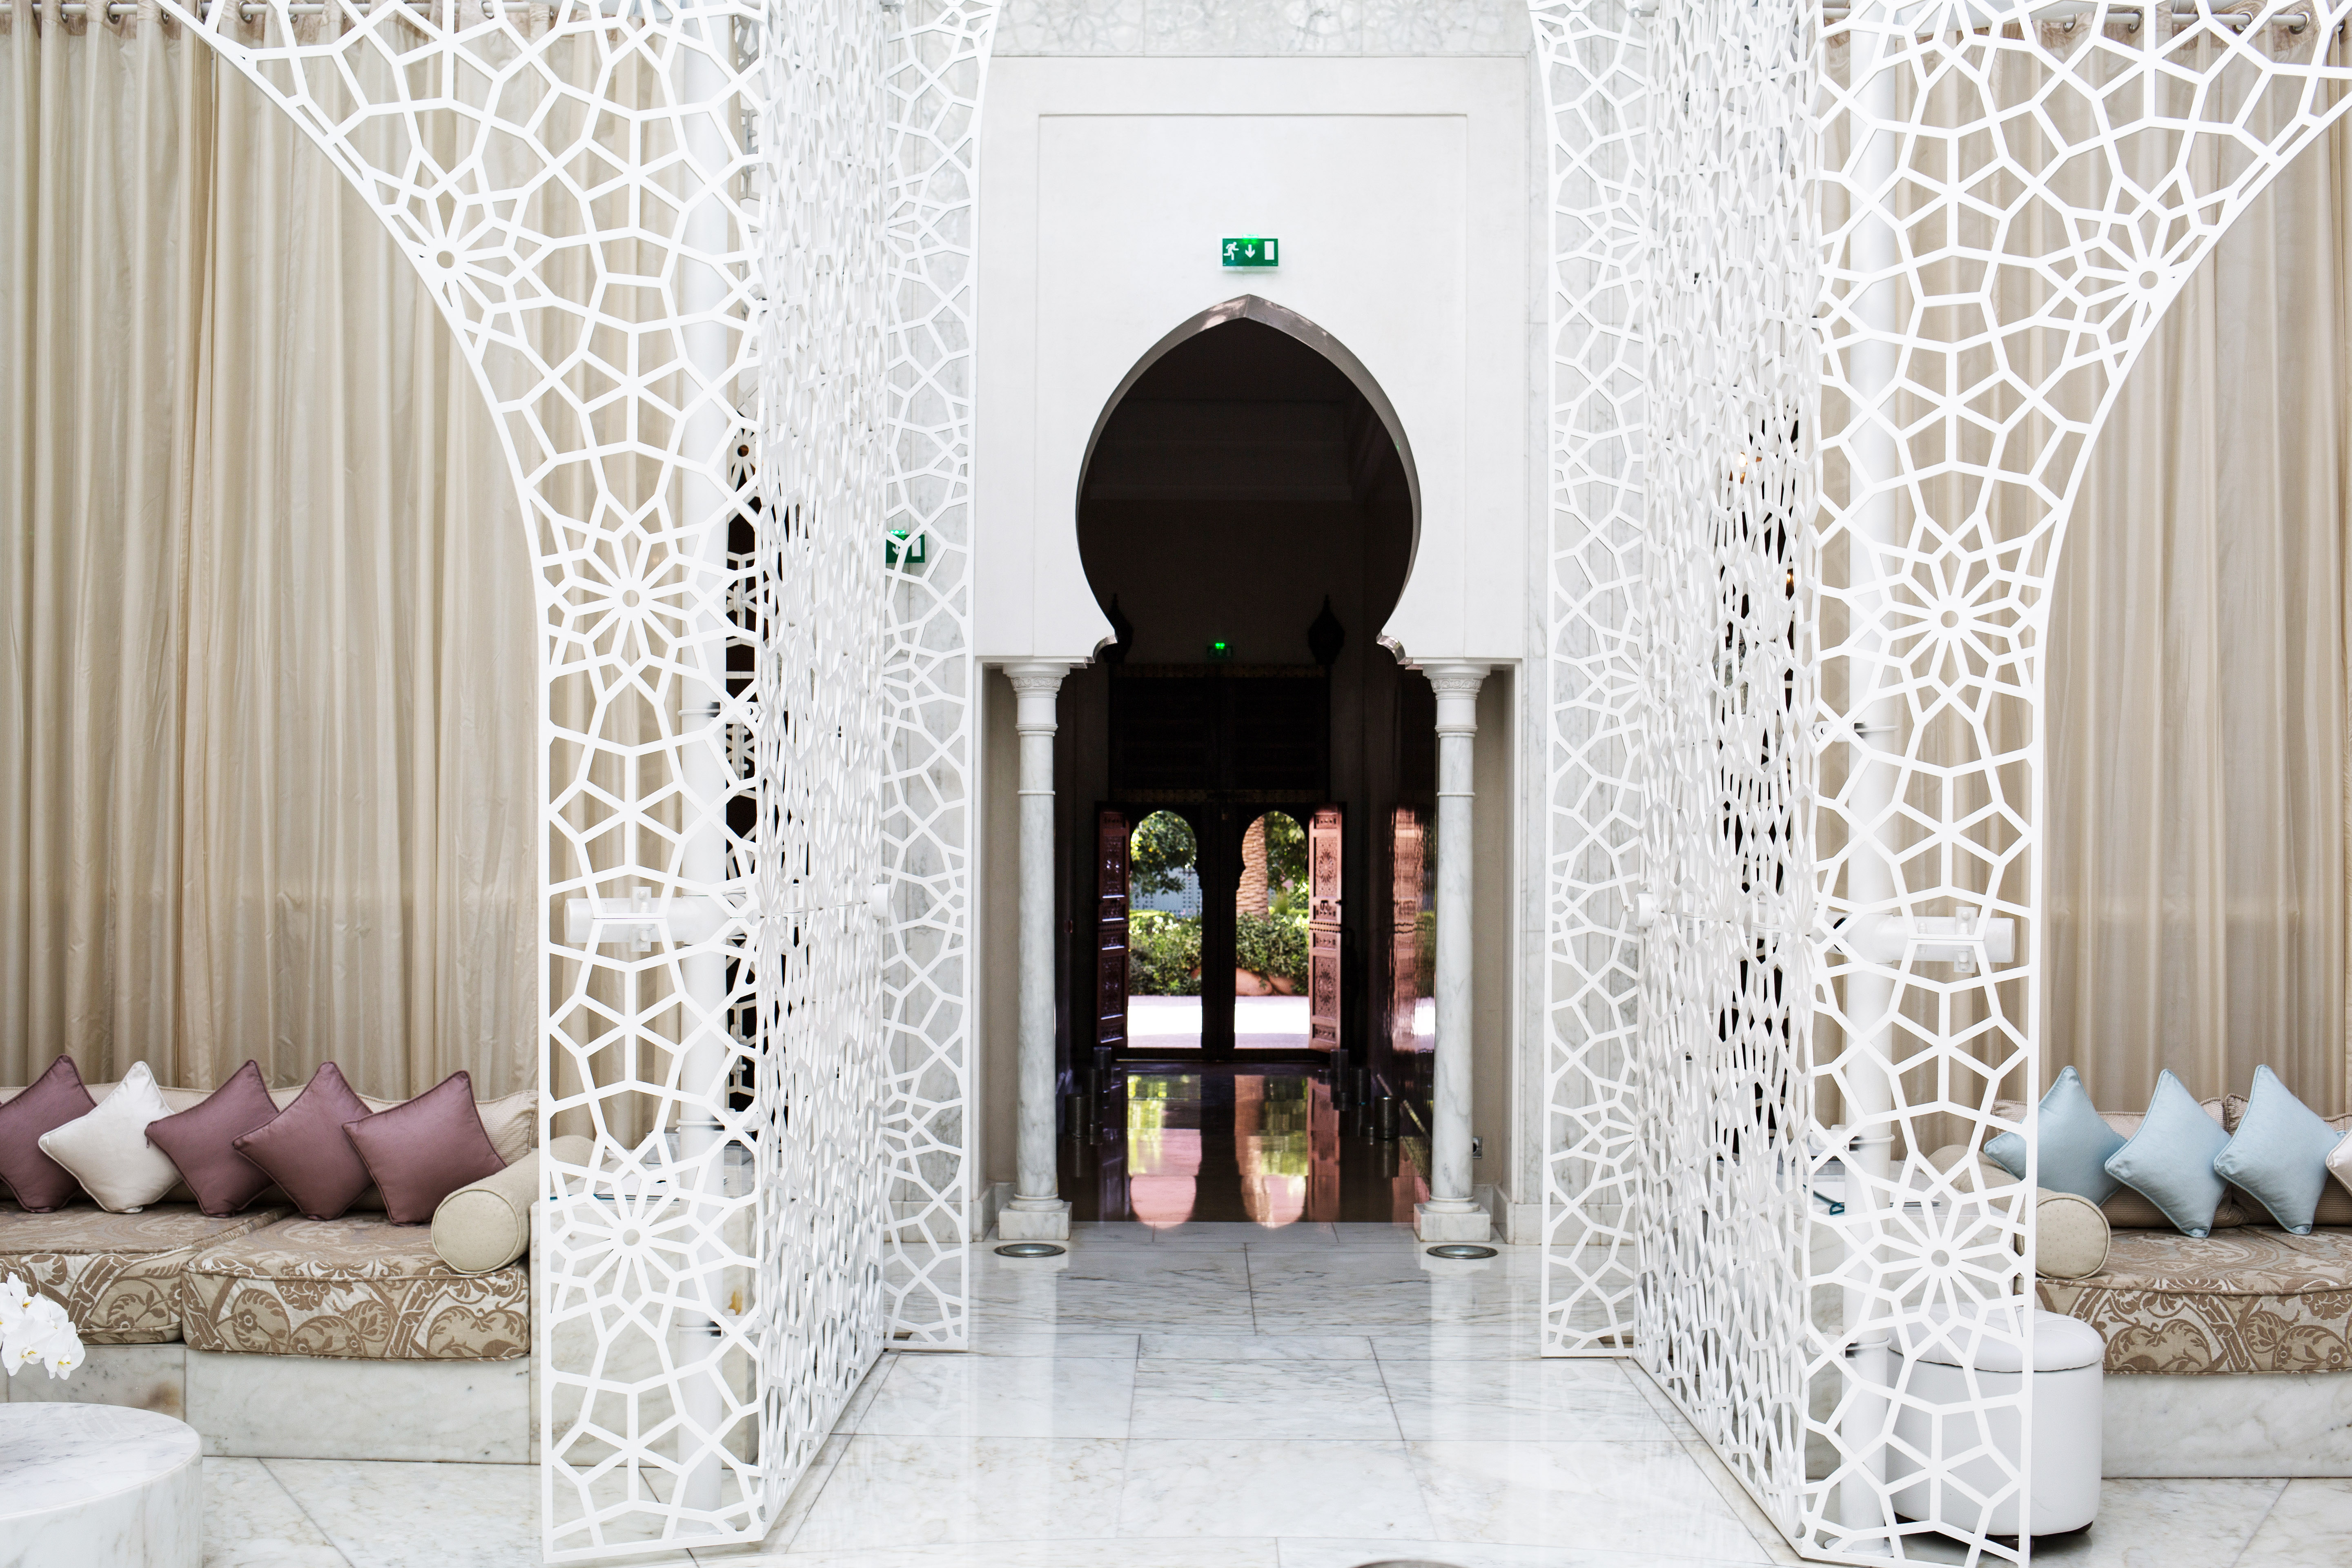 Royal Mansour Marrakech – A Dreamy Spa Day